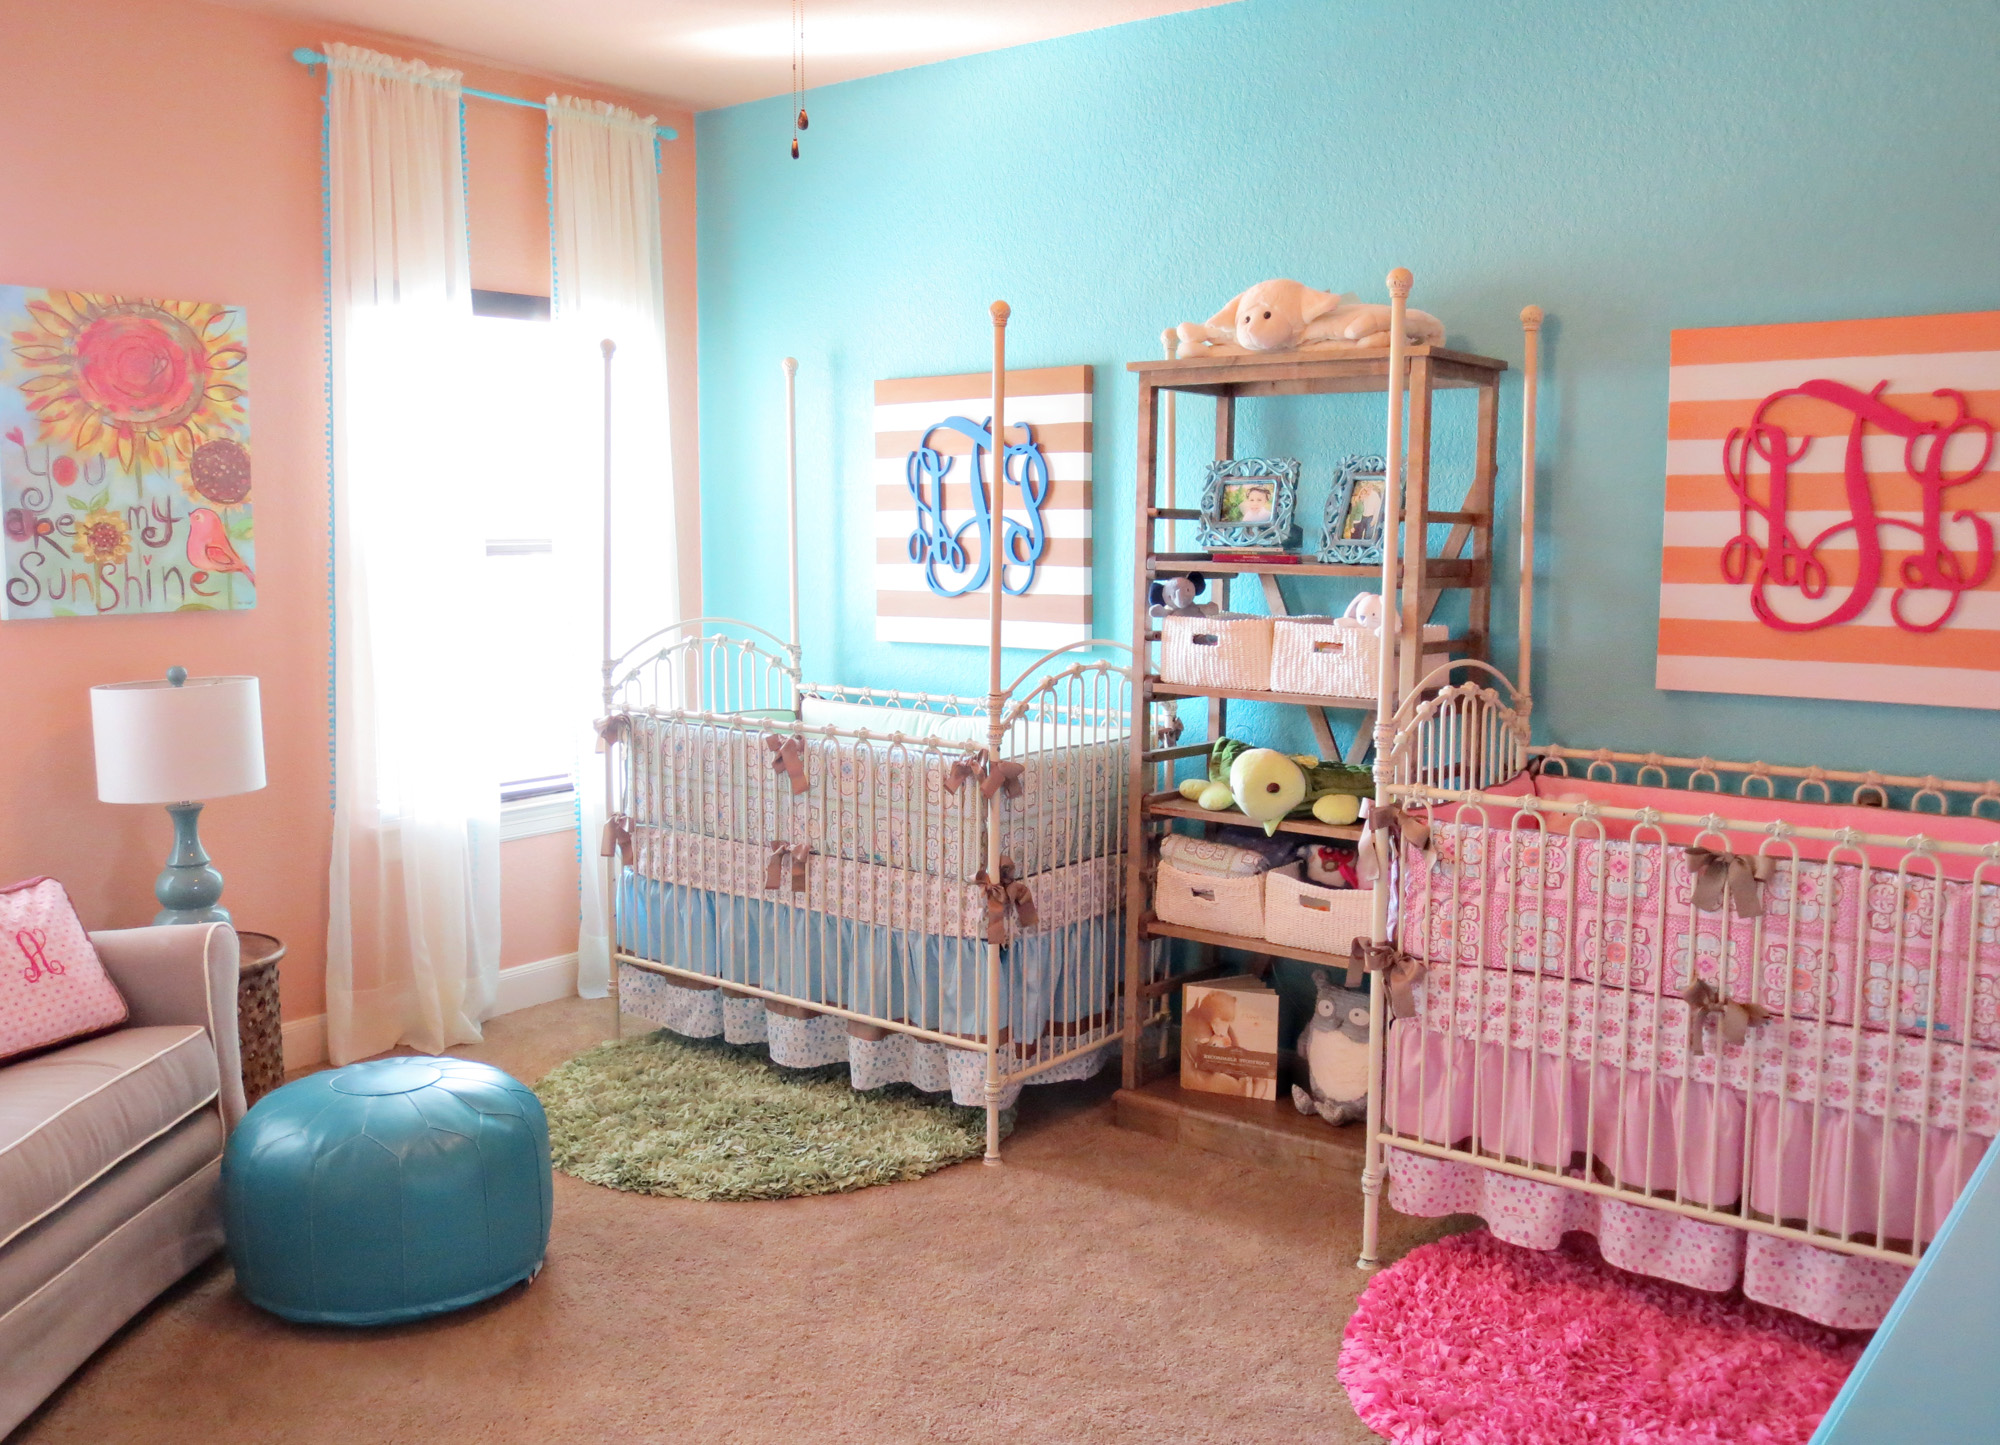 kiz-ve-erkek-bebekler-icin-renkli-oda-dekorasyonlari.jpg